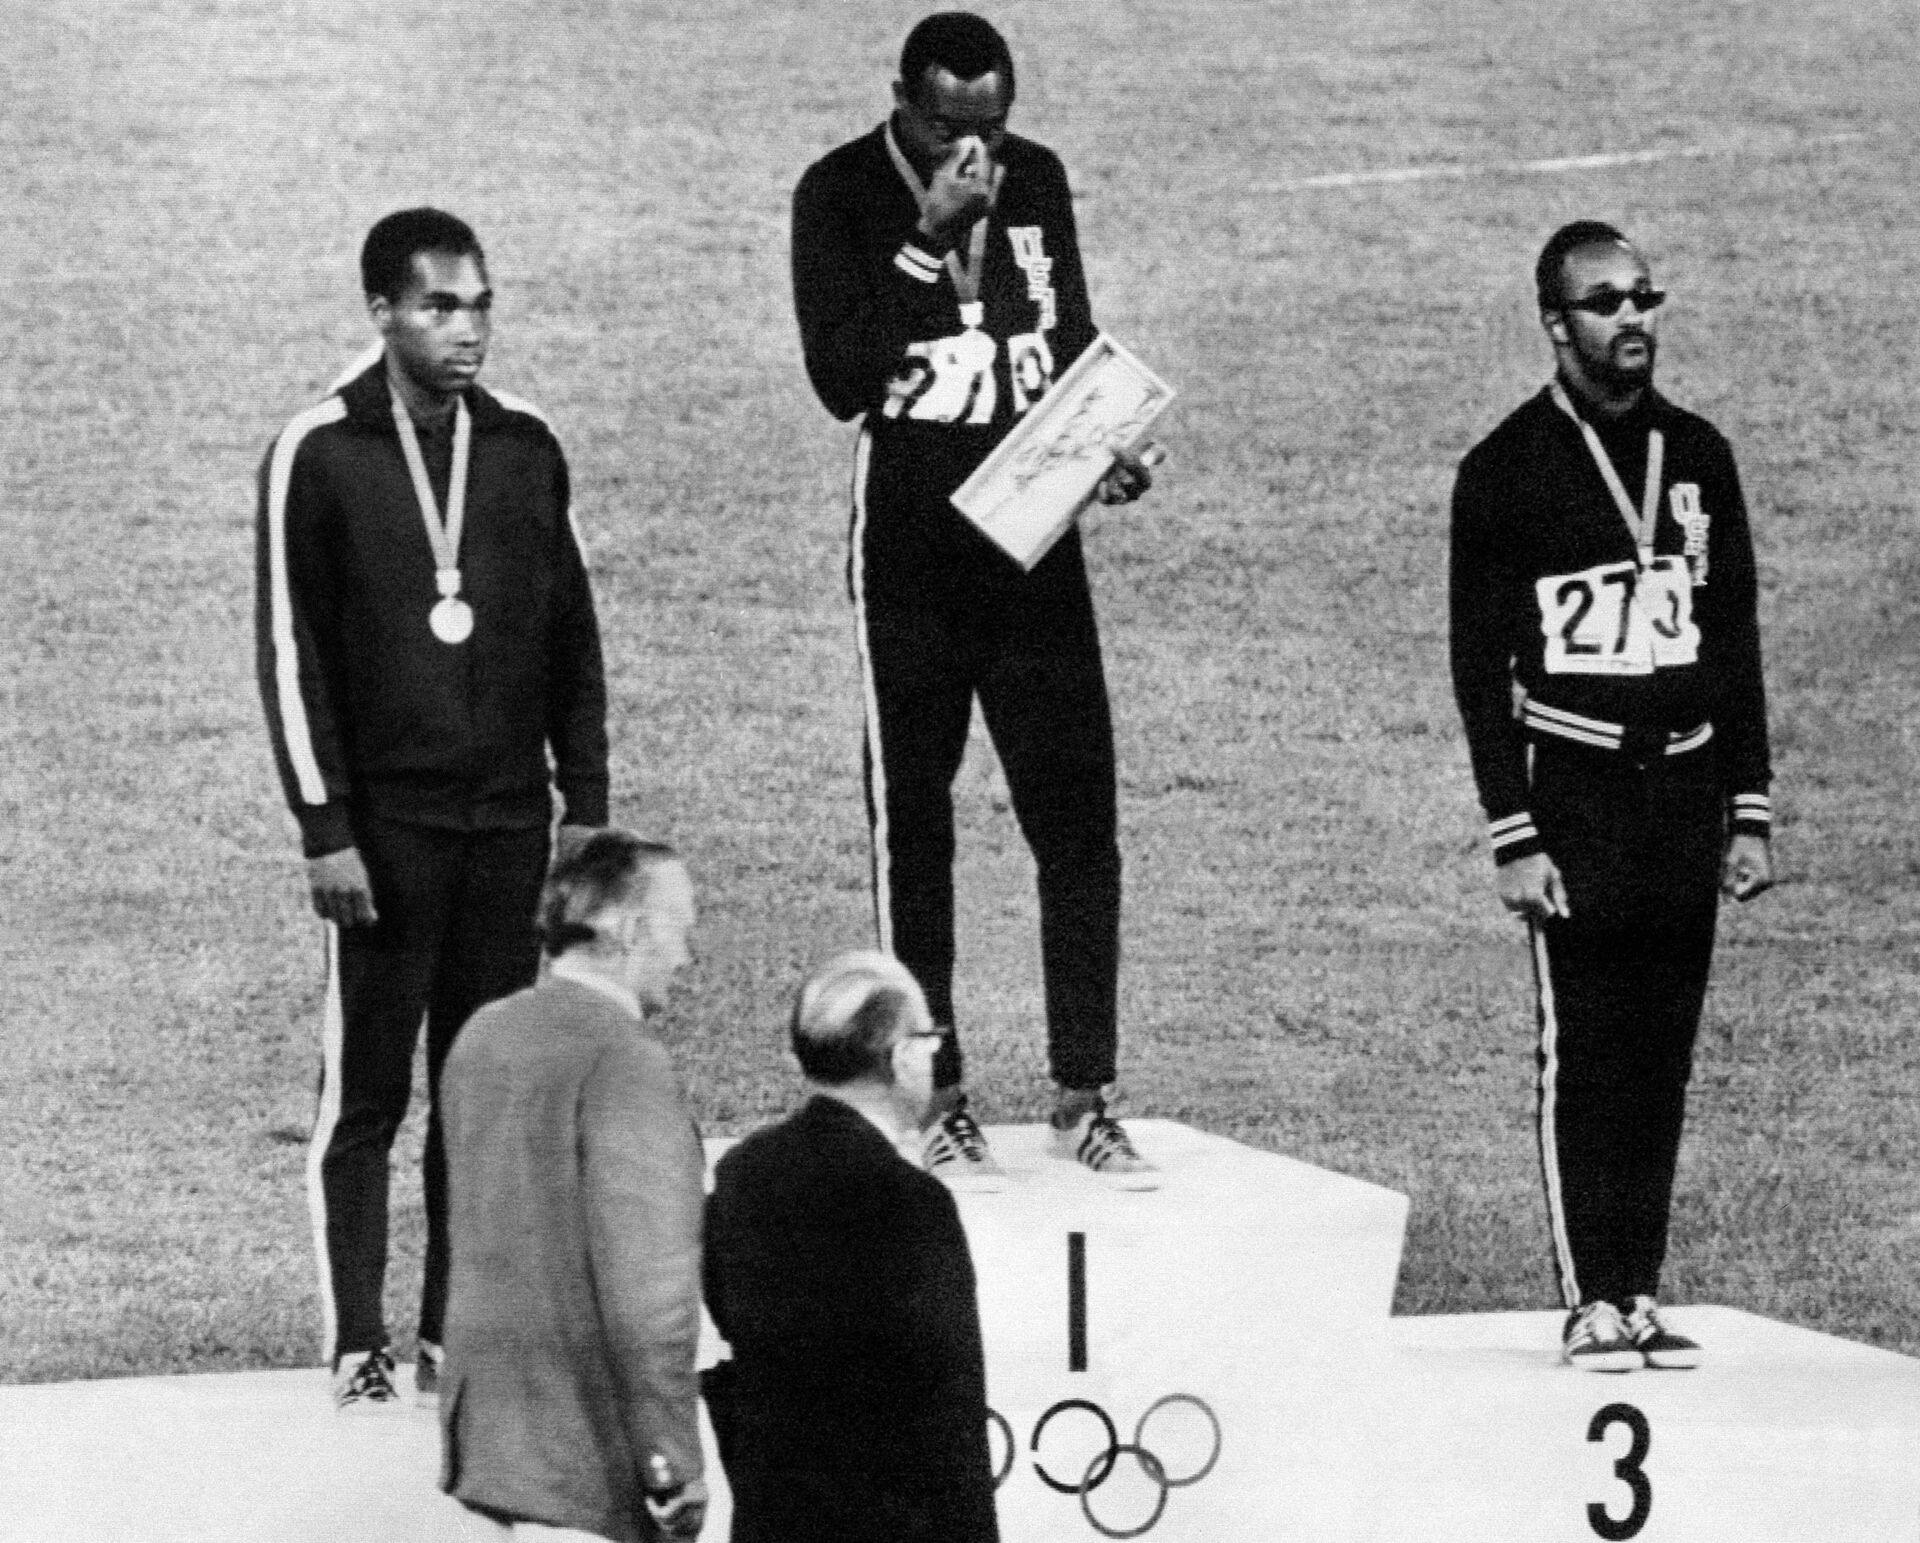 Jim Hines løb i 1968 100 meter på 9,95 sekunder.
